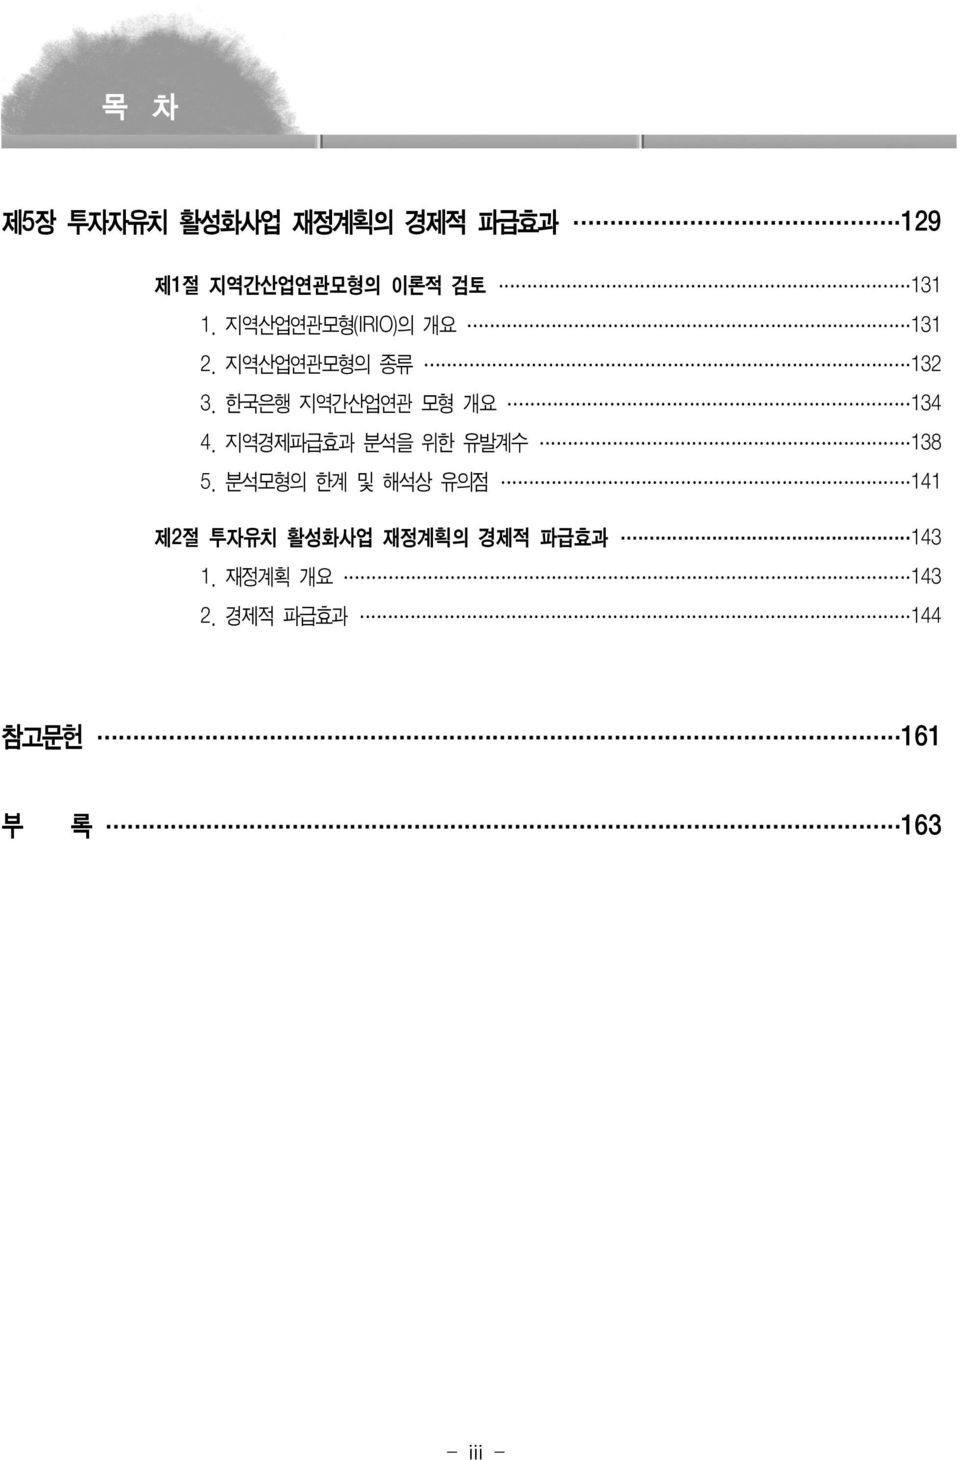 한국은행 지역간산업연관 모형 개요 134 4. 지역경제파급효과 분석을 위한 유발계수 138 5.